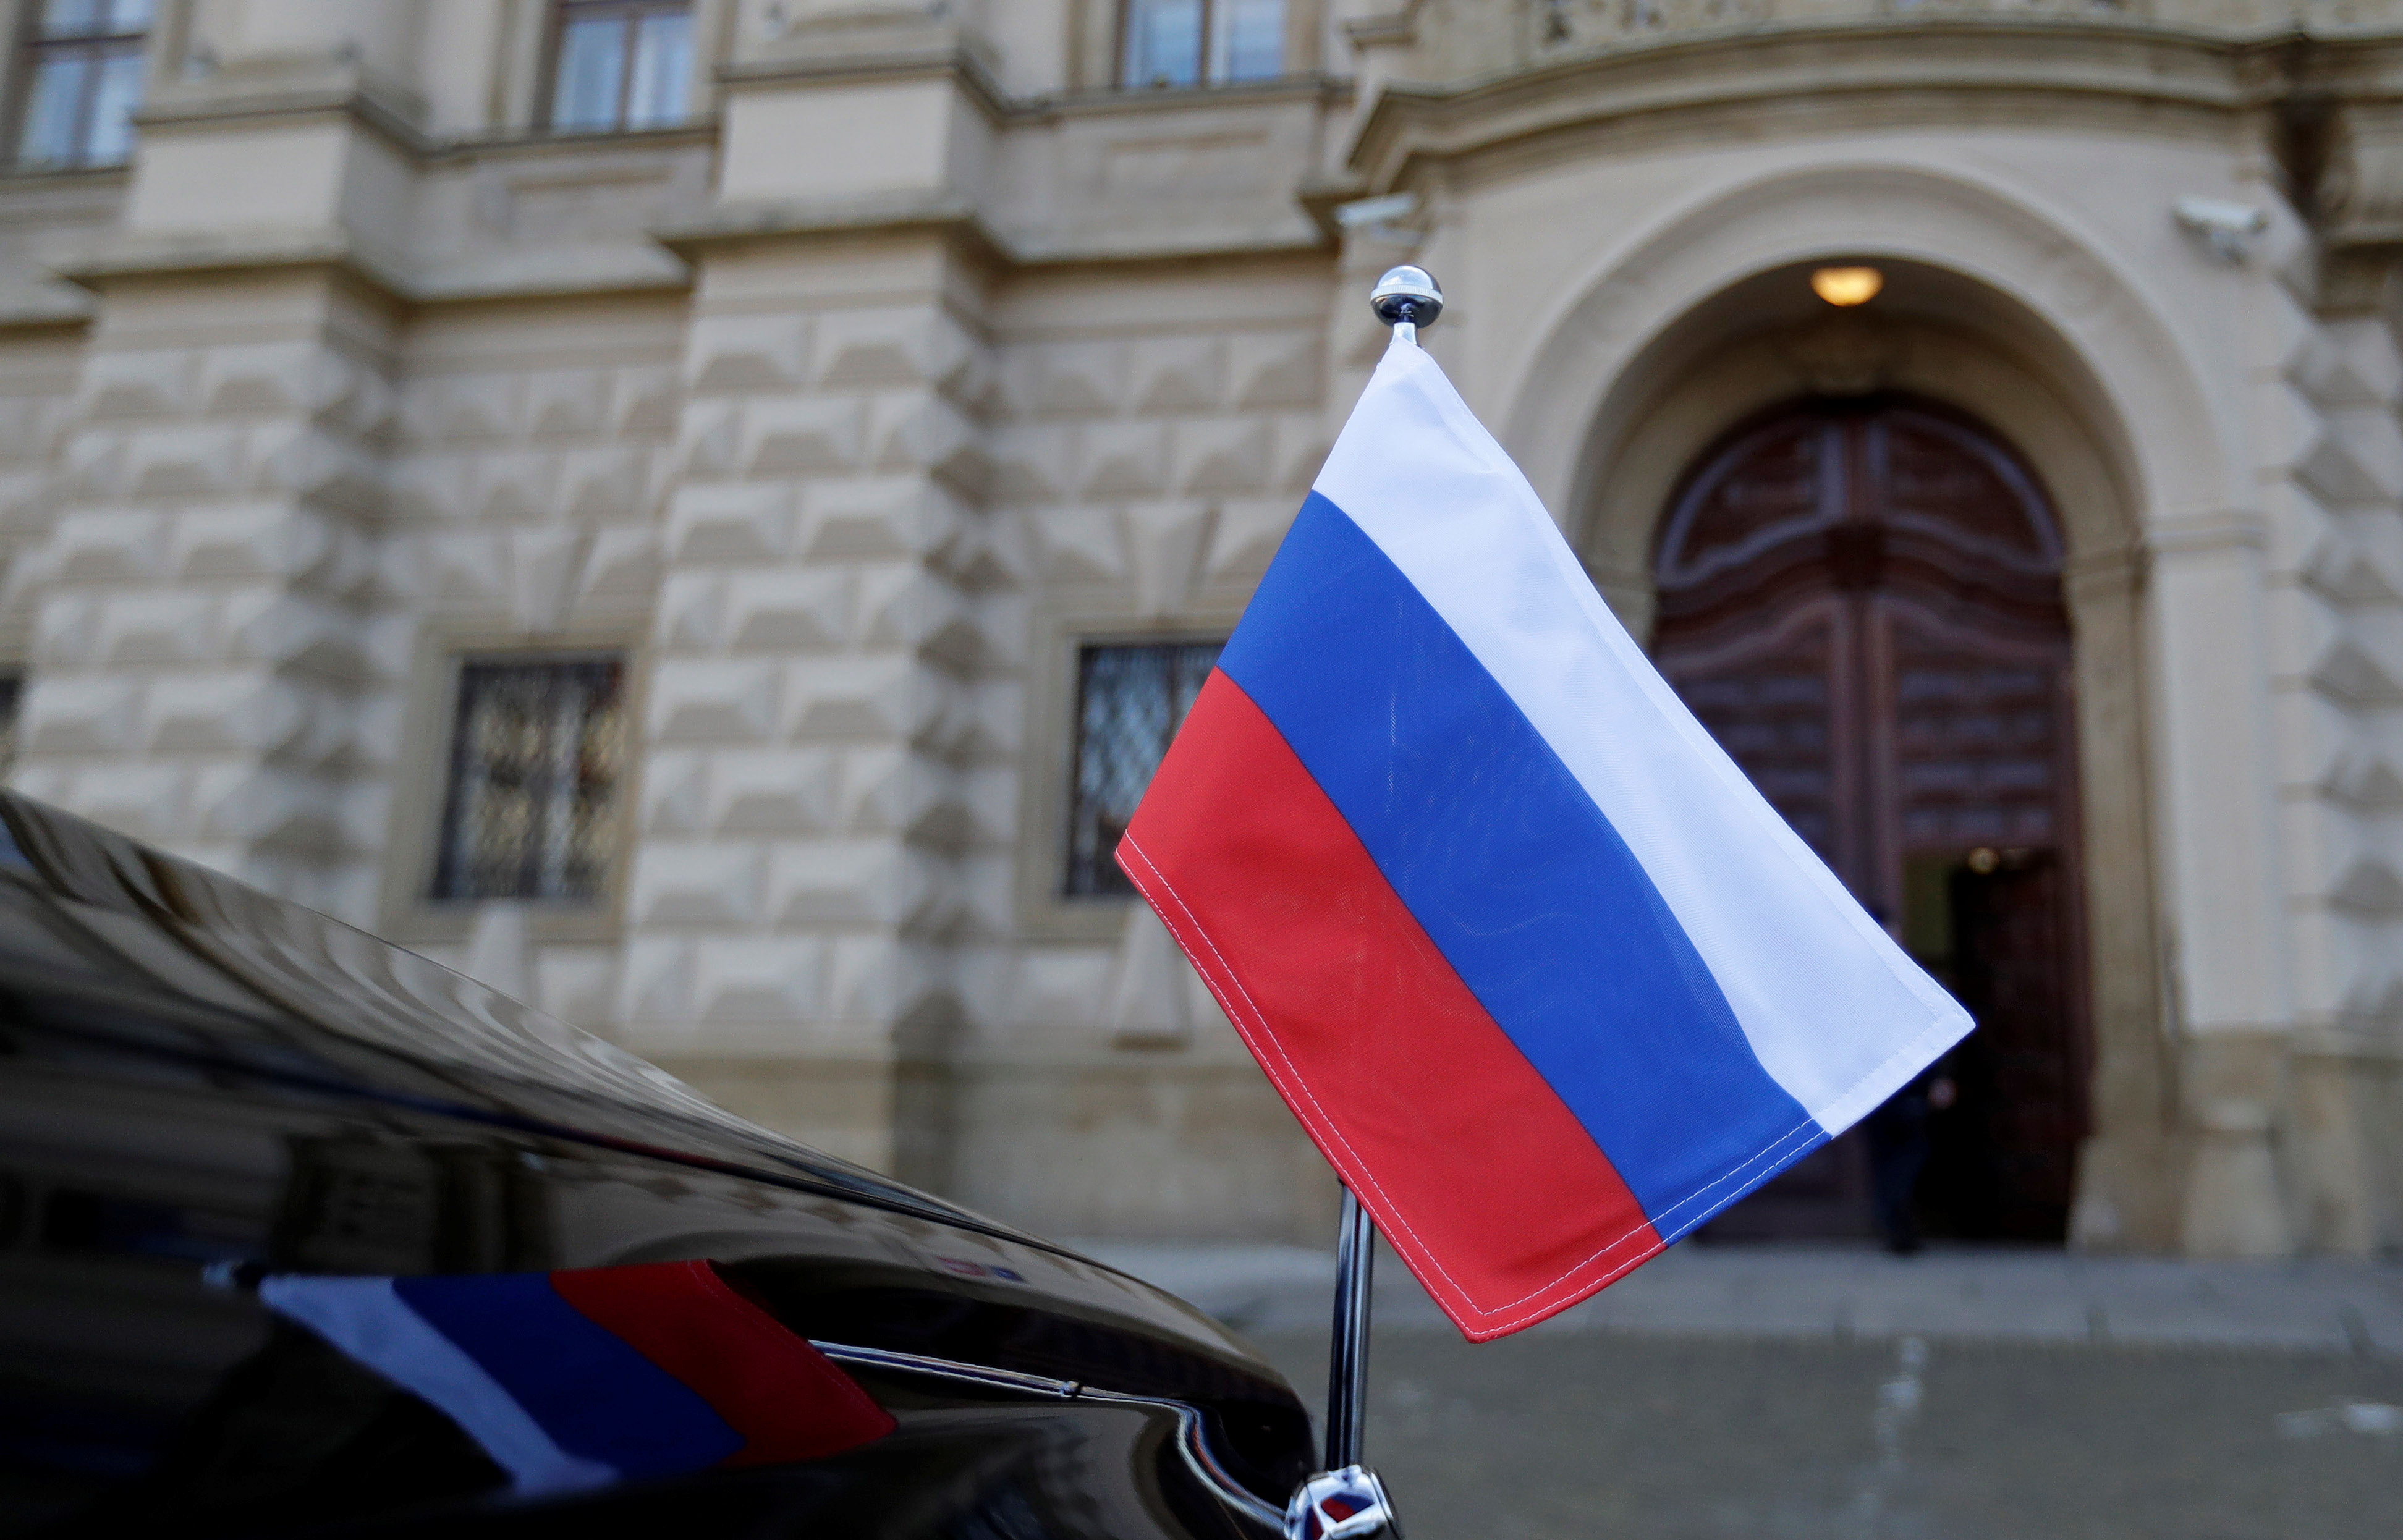 Czech foreign minister summons Russian ambassador